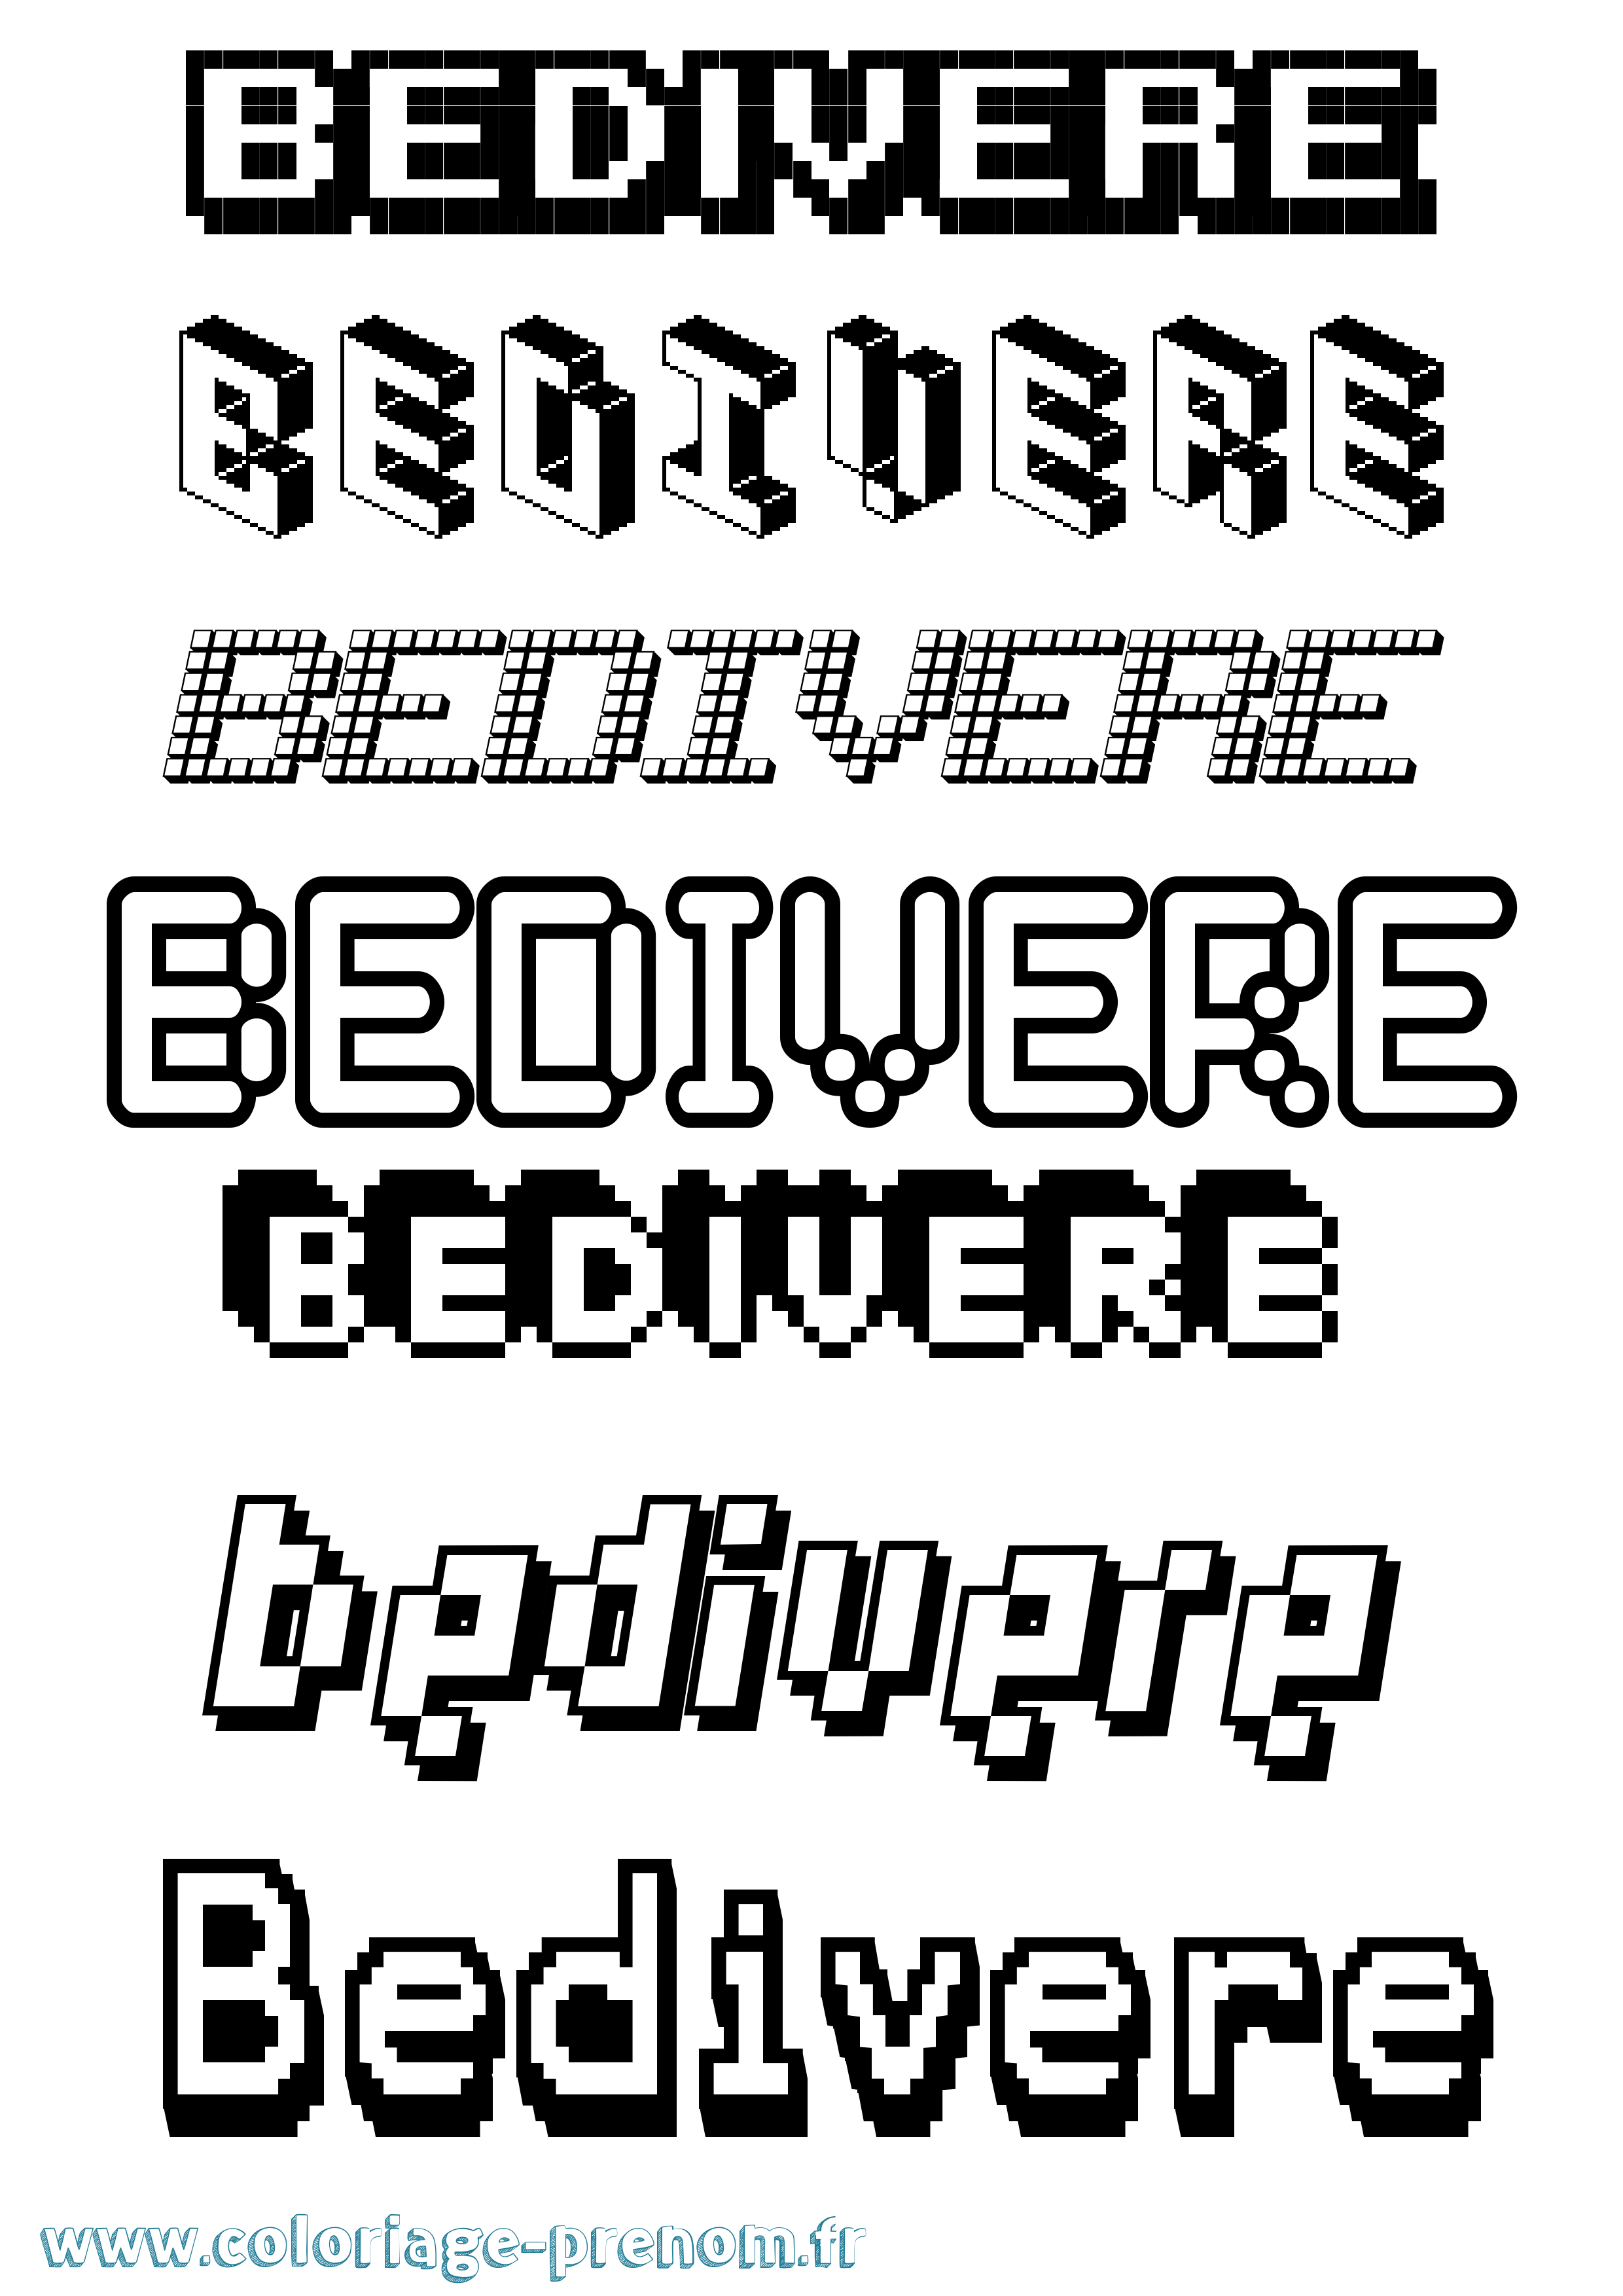 Coloriage prénom Bedivere Pixel